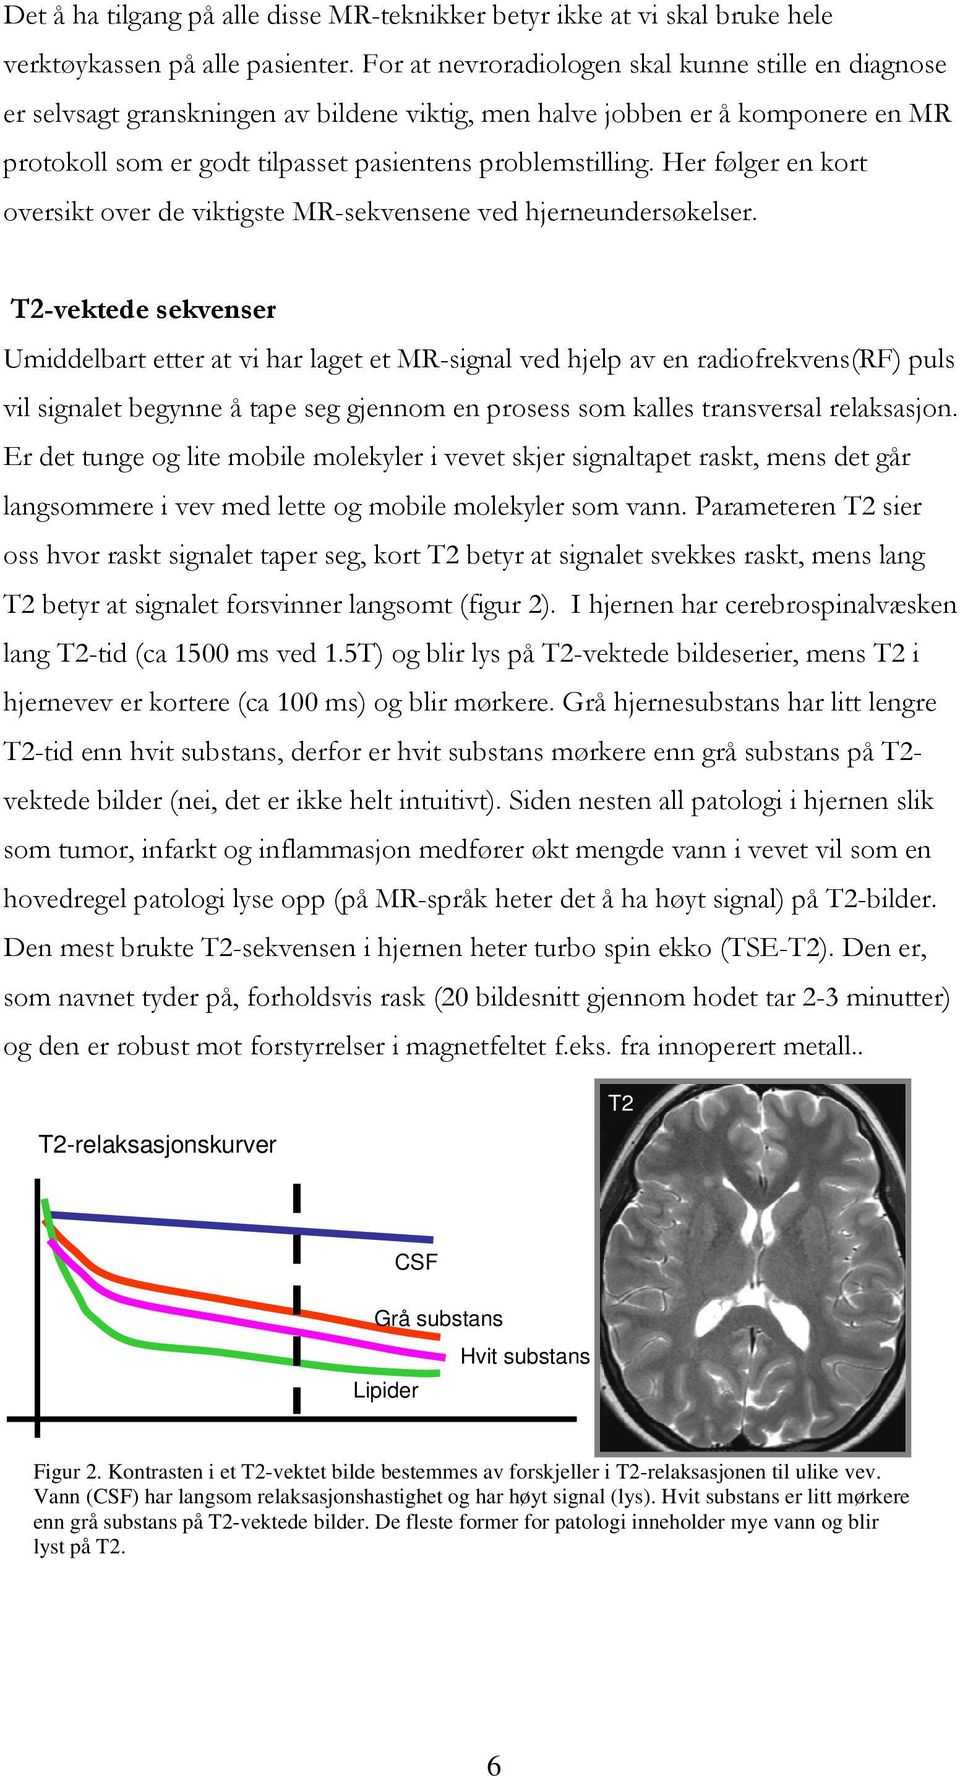 Her følger en kort oversikt over de viktigste MR-sekvensene ved hjerneundersøkelser.